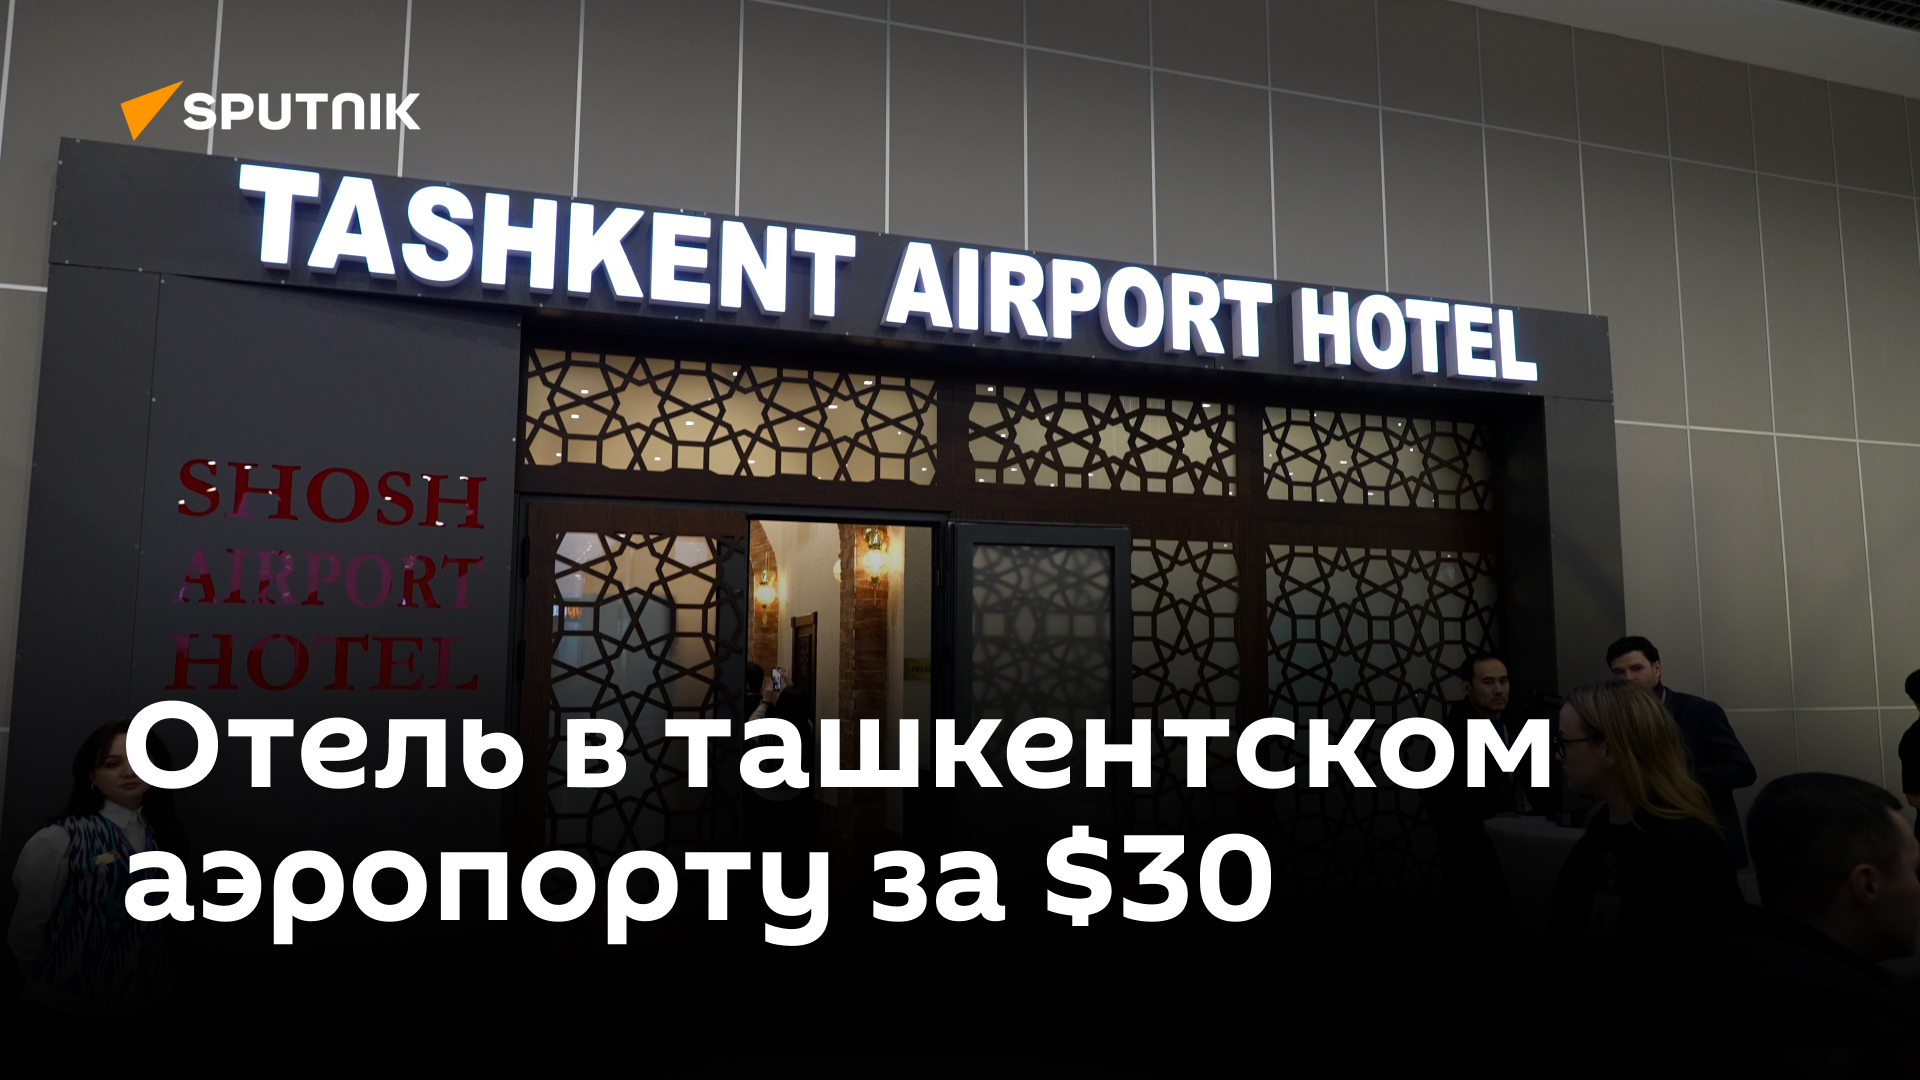 Как выглядит и сколько стоит проживание в первом отеле ташкентского аэропорта